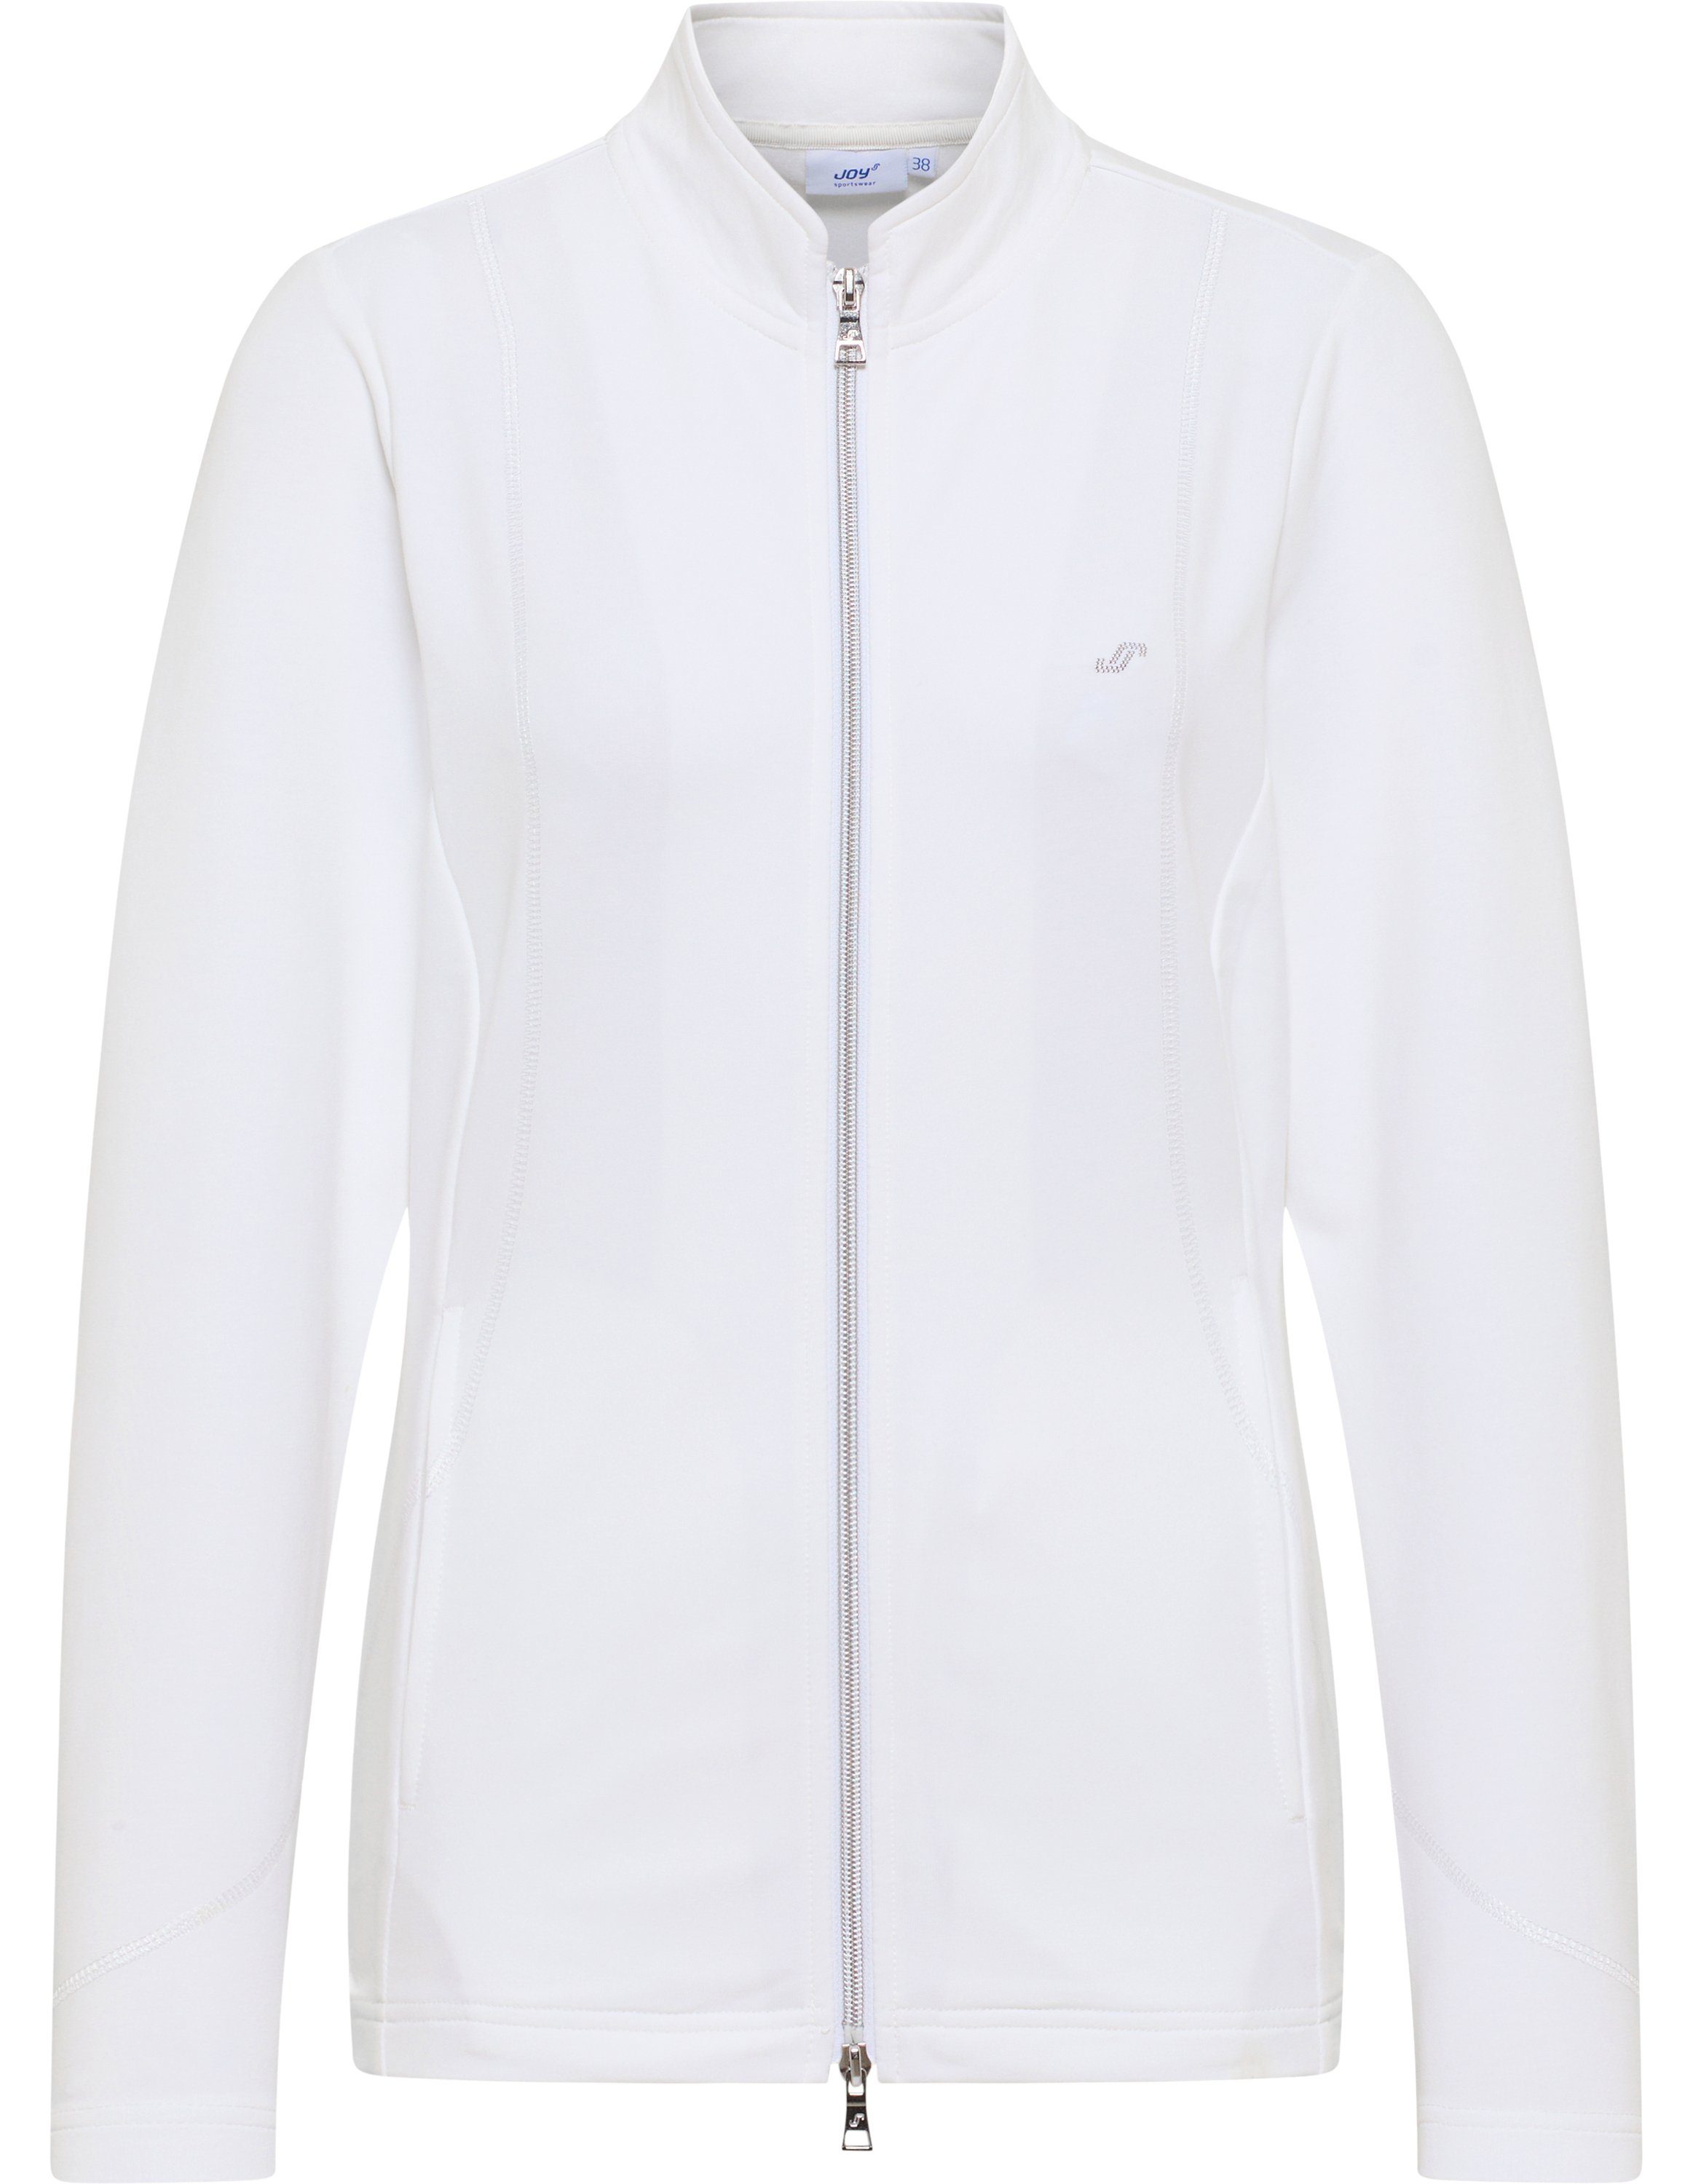 Jacke Trainingsjacke DORIT Joy Sportswear white